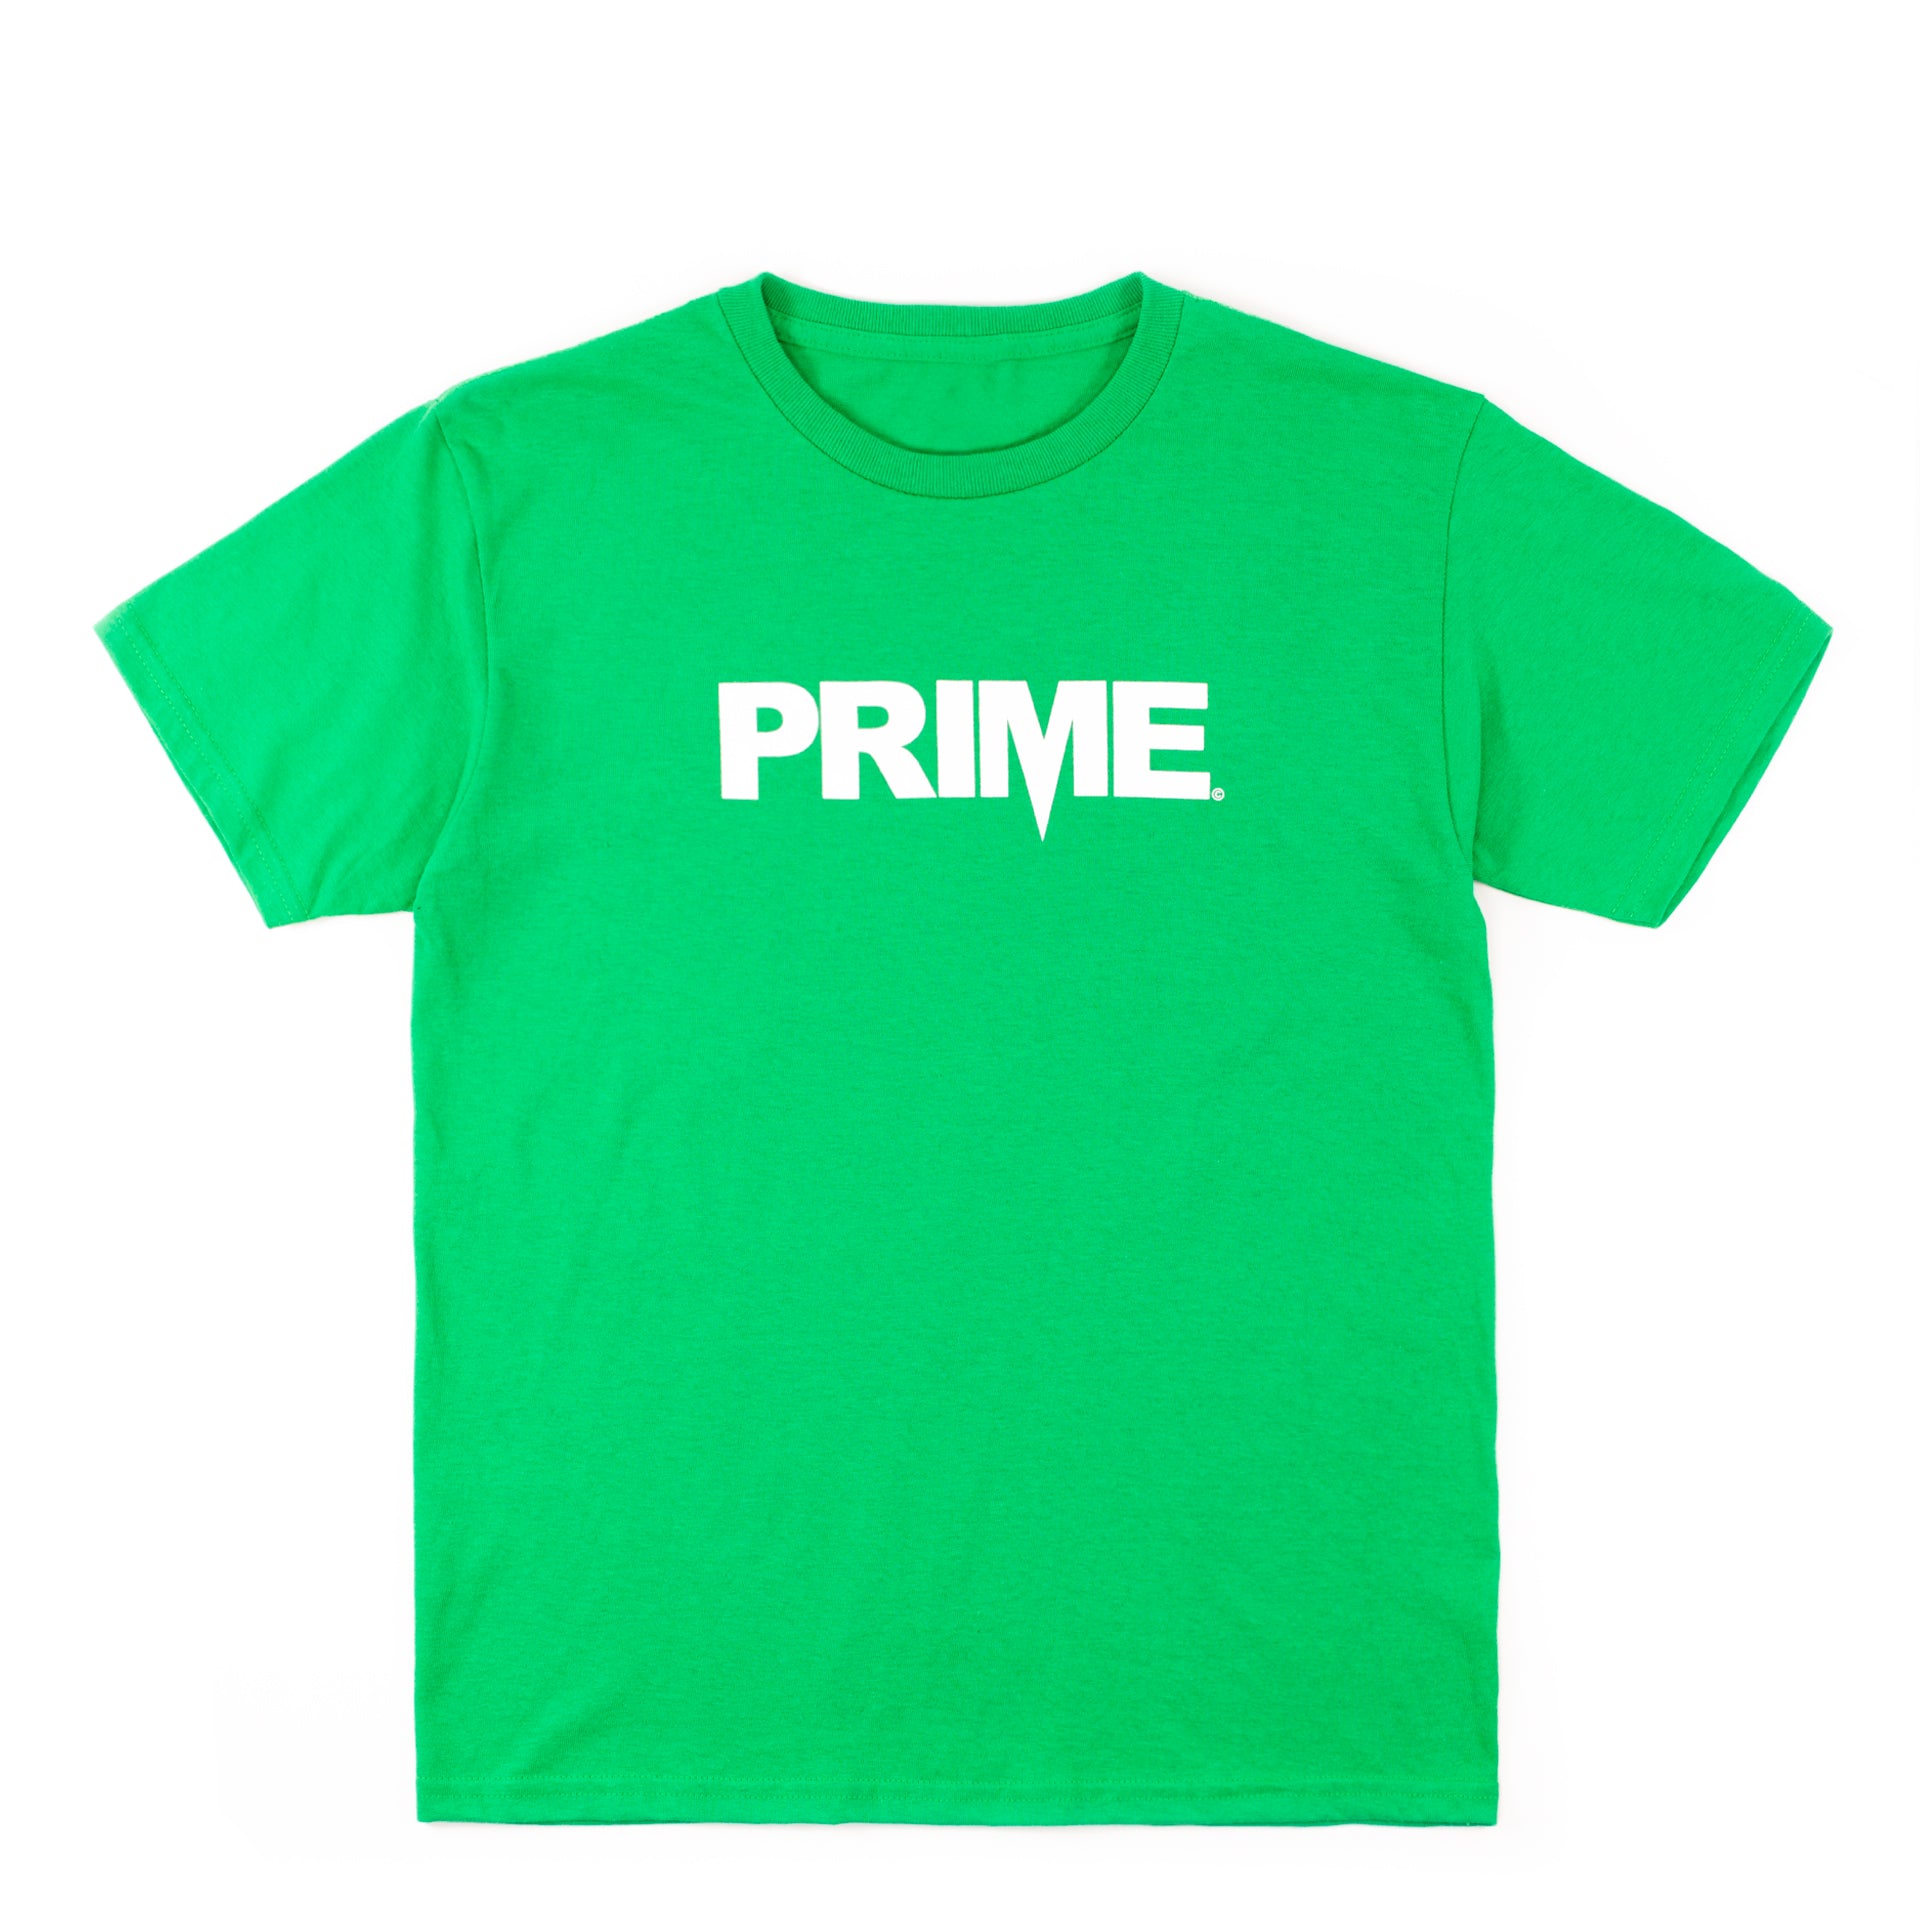 Prime Delux OG Logo Kids T Shirt - Green / White - Prime Delux Store